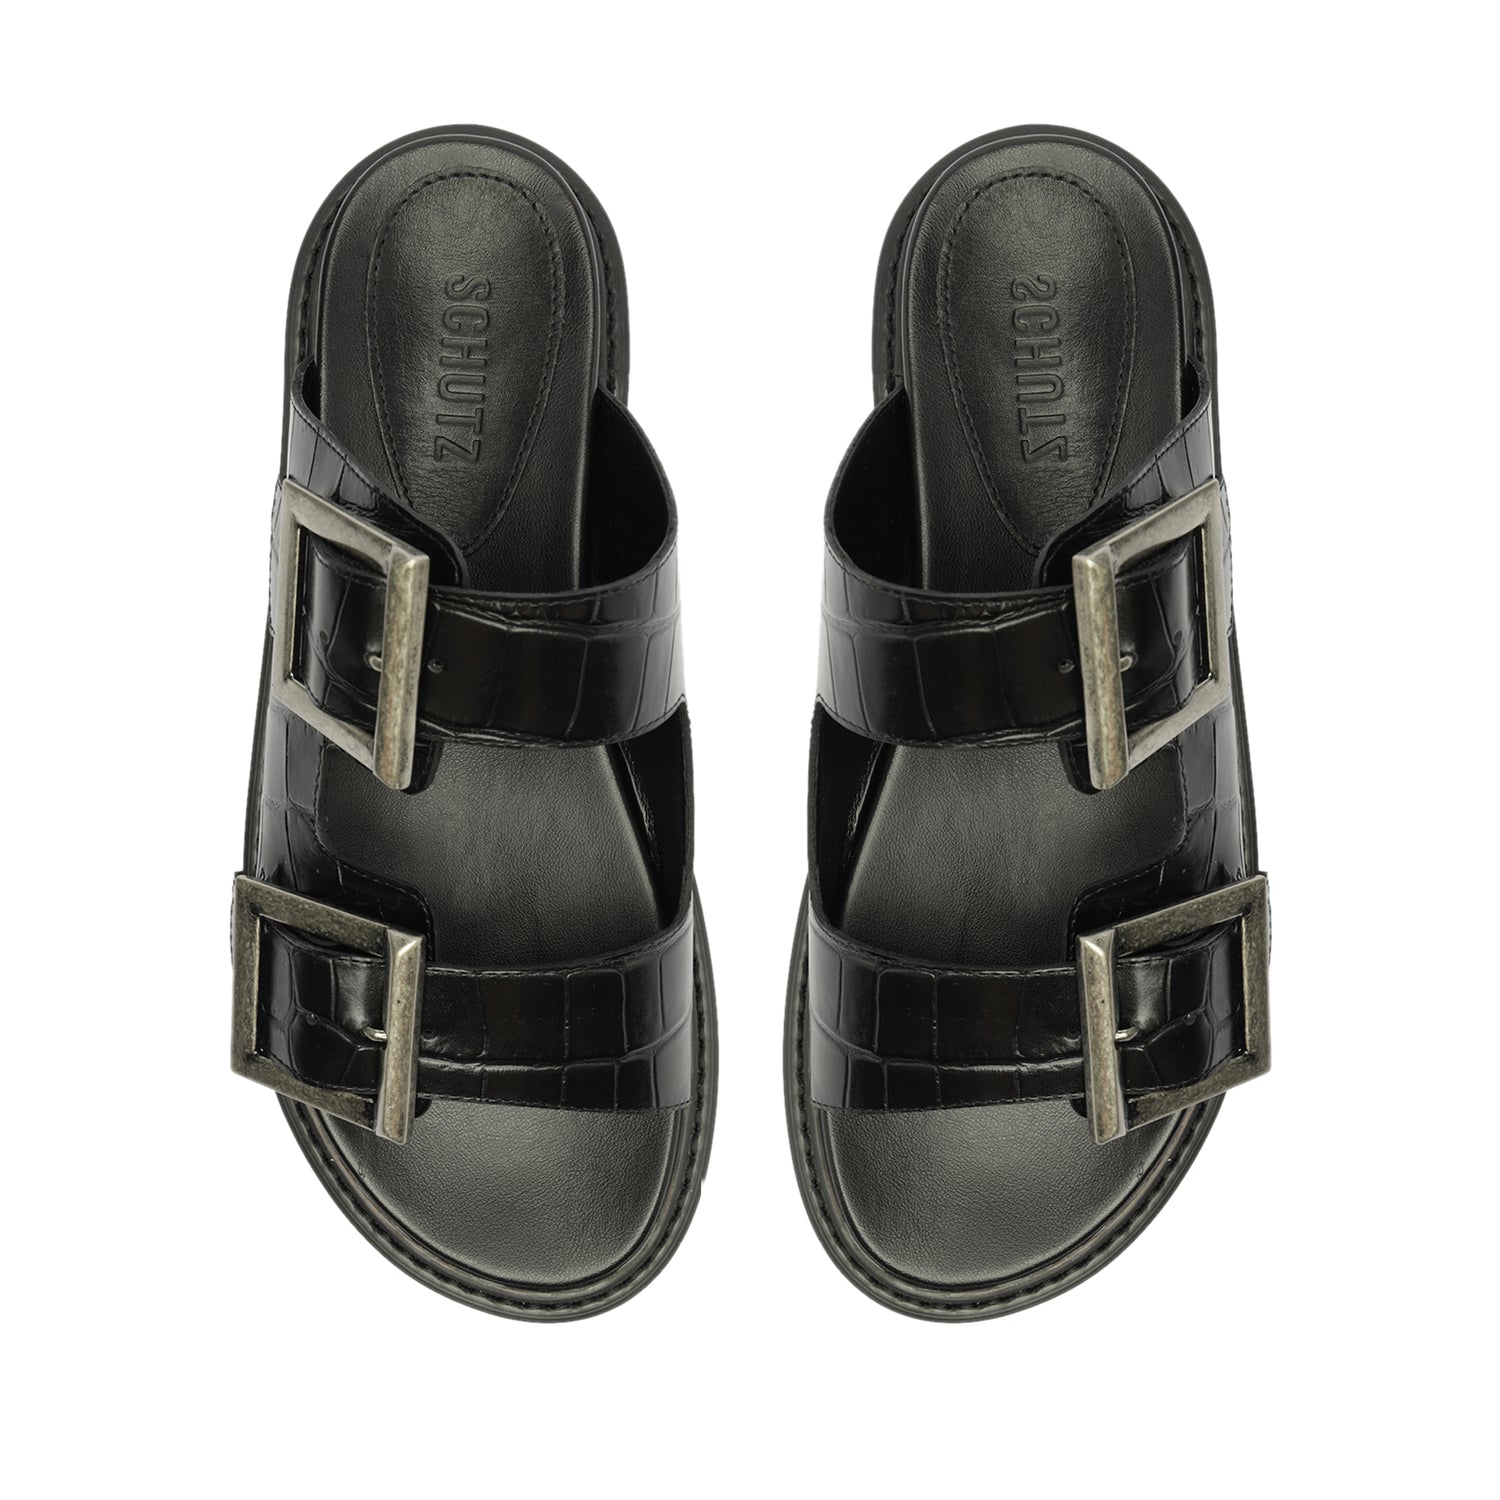 Nola Crocodile-Embossed Leather Sandal Black Crocodile-Embossed Leather